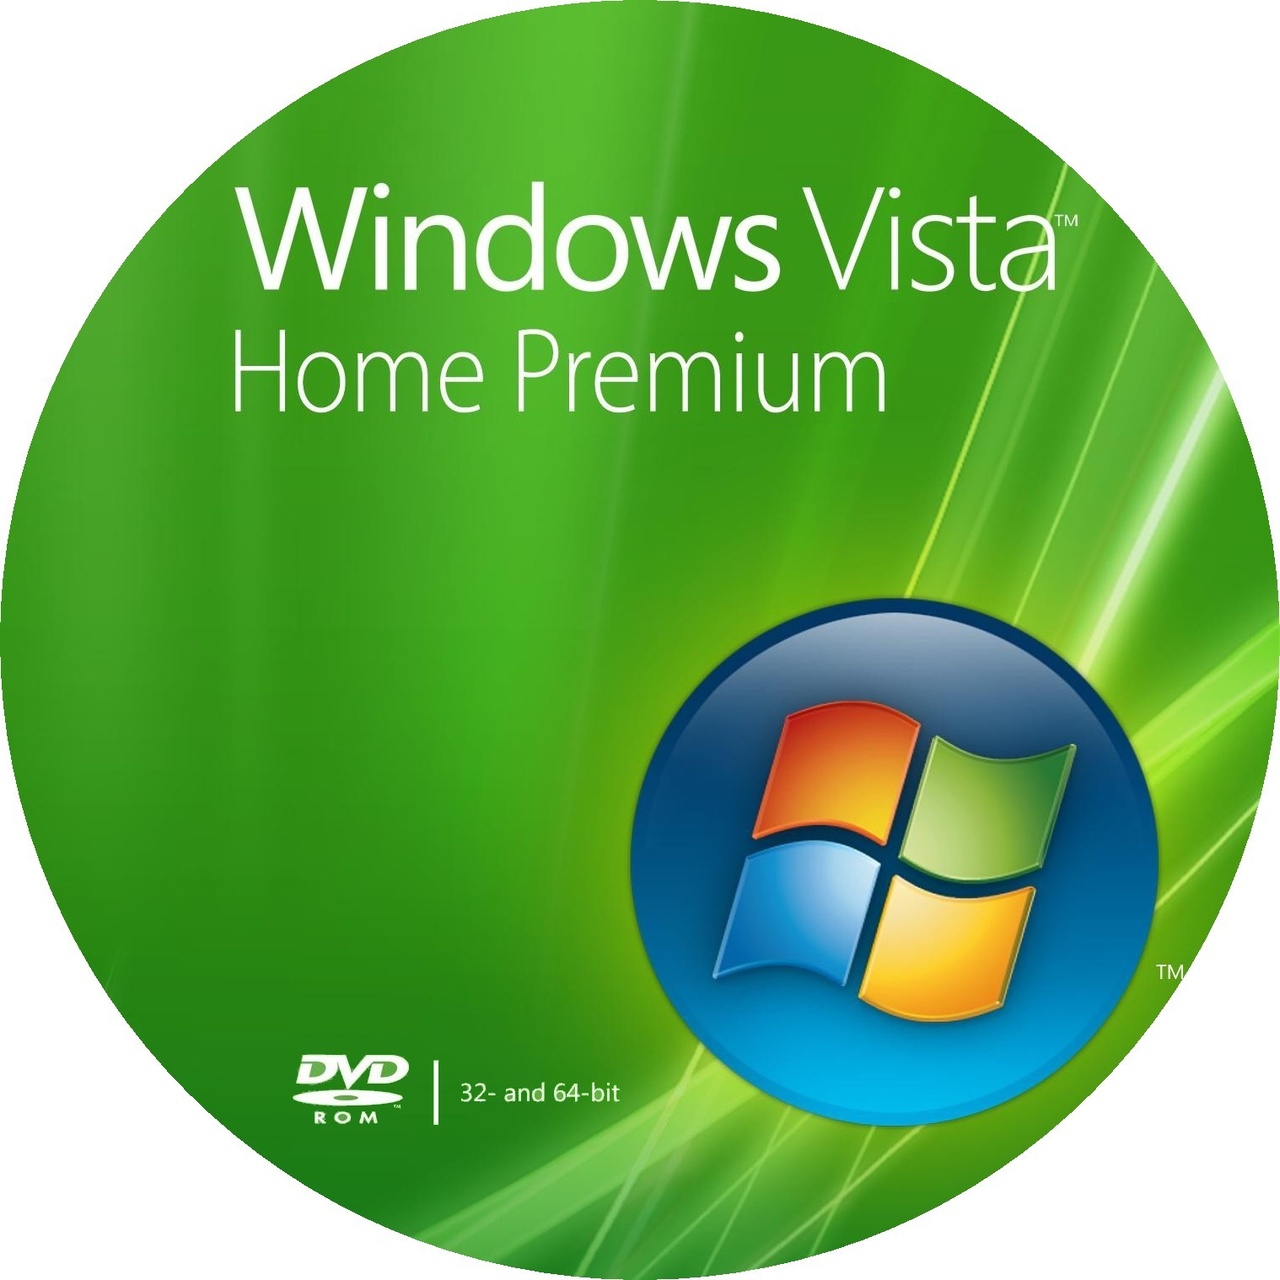 windows 7 home premium 64 bit download zip